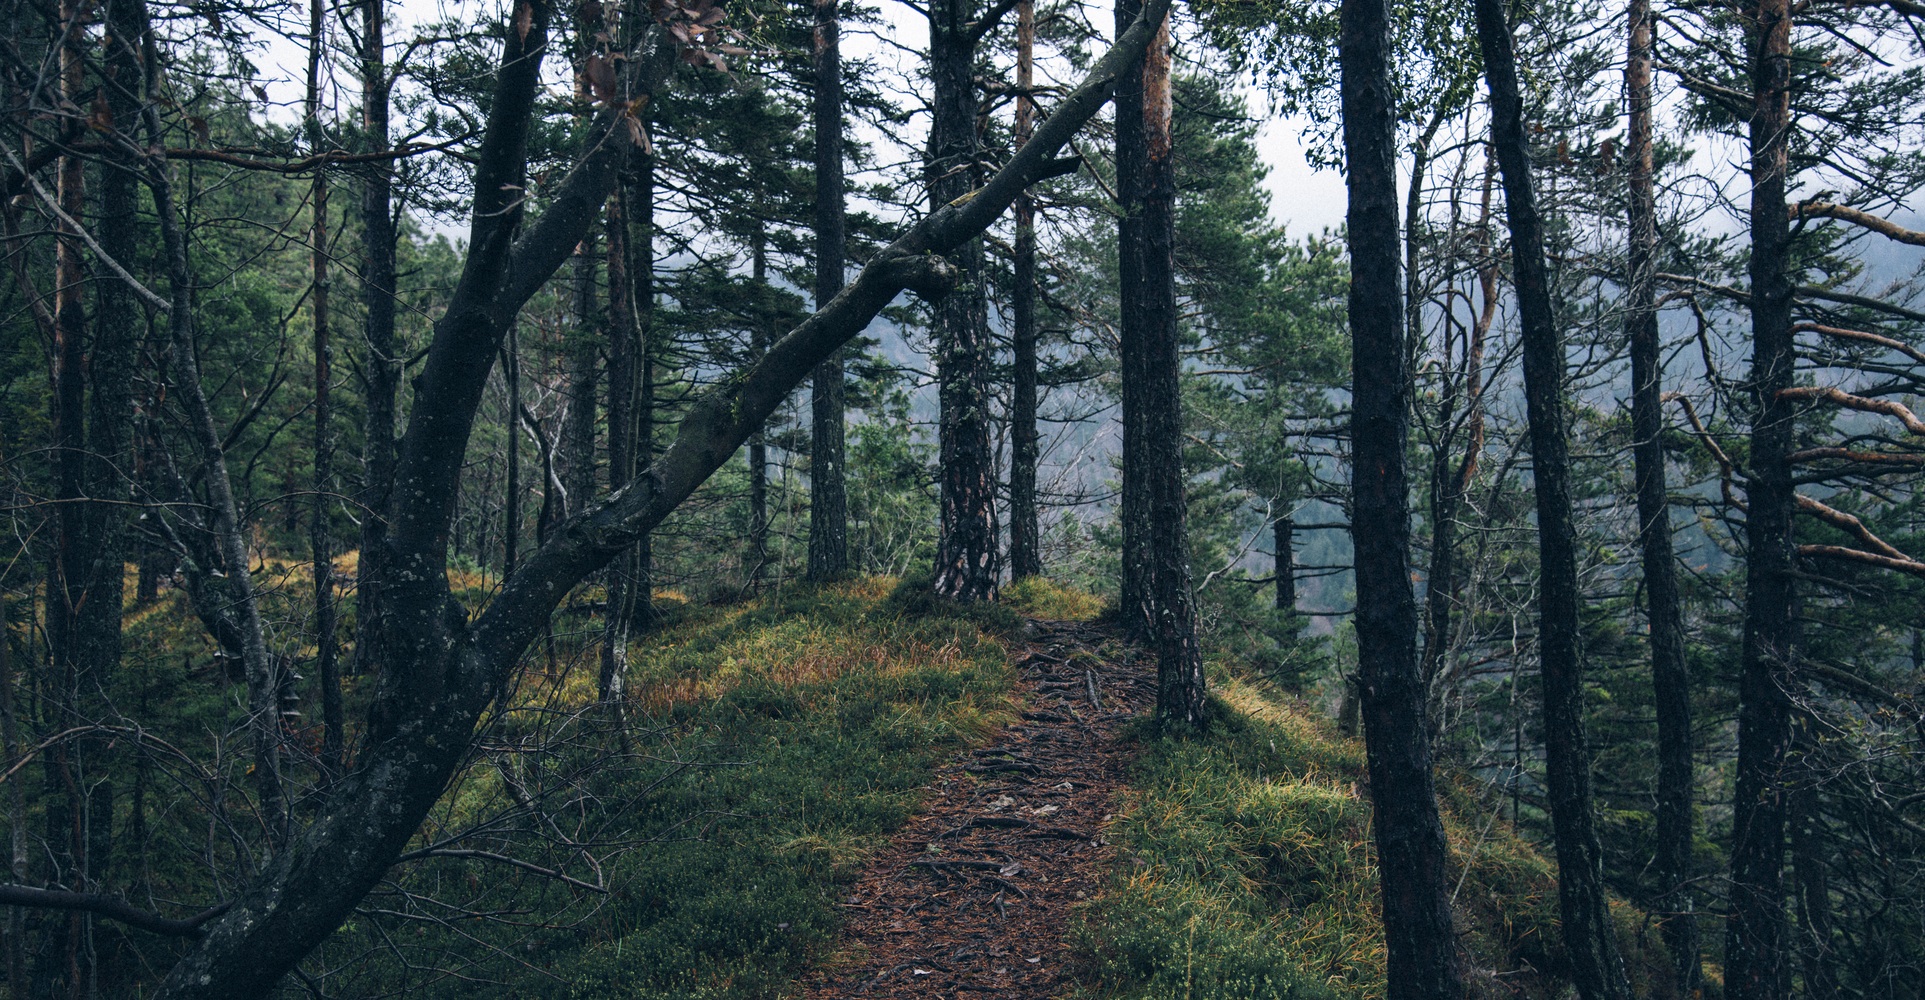 ścieżka w lesie, zdjęcie: unsplash.com, CC-0